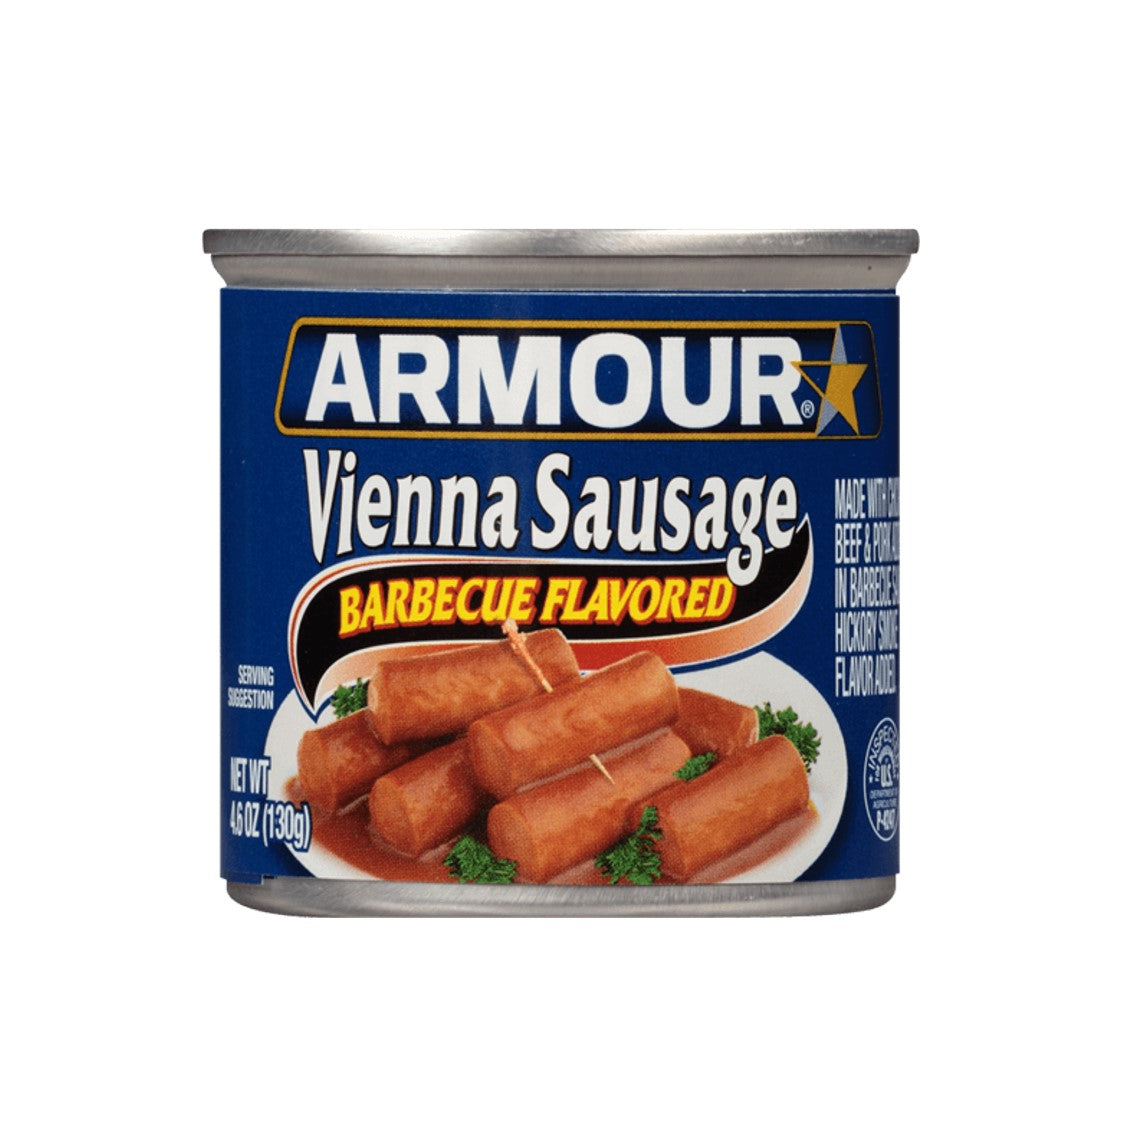 Armour Vienna Sausage BBQ (130g)